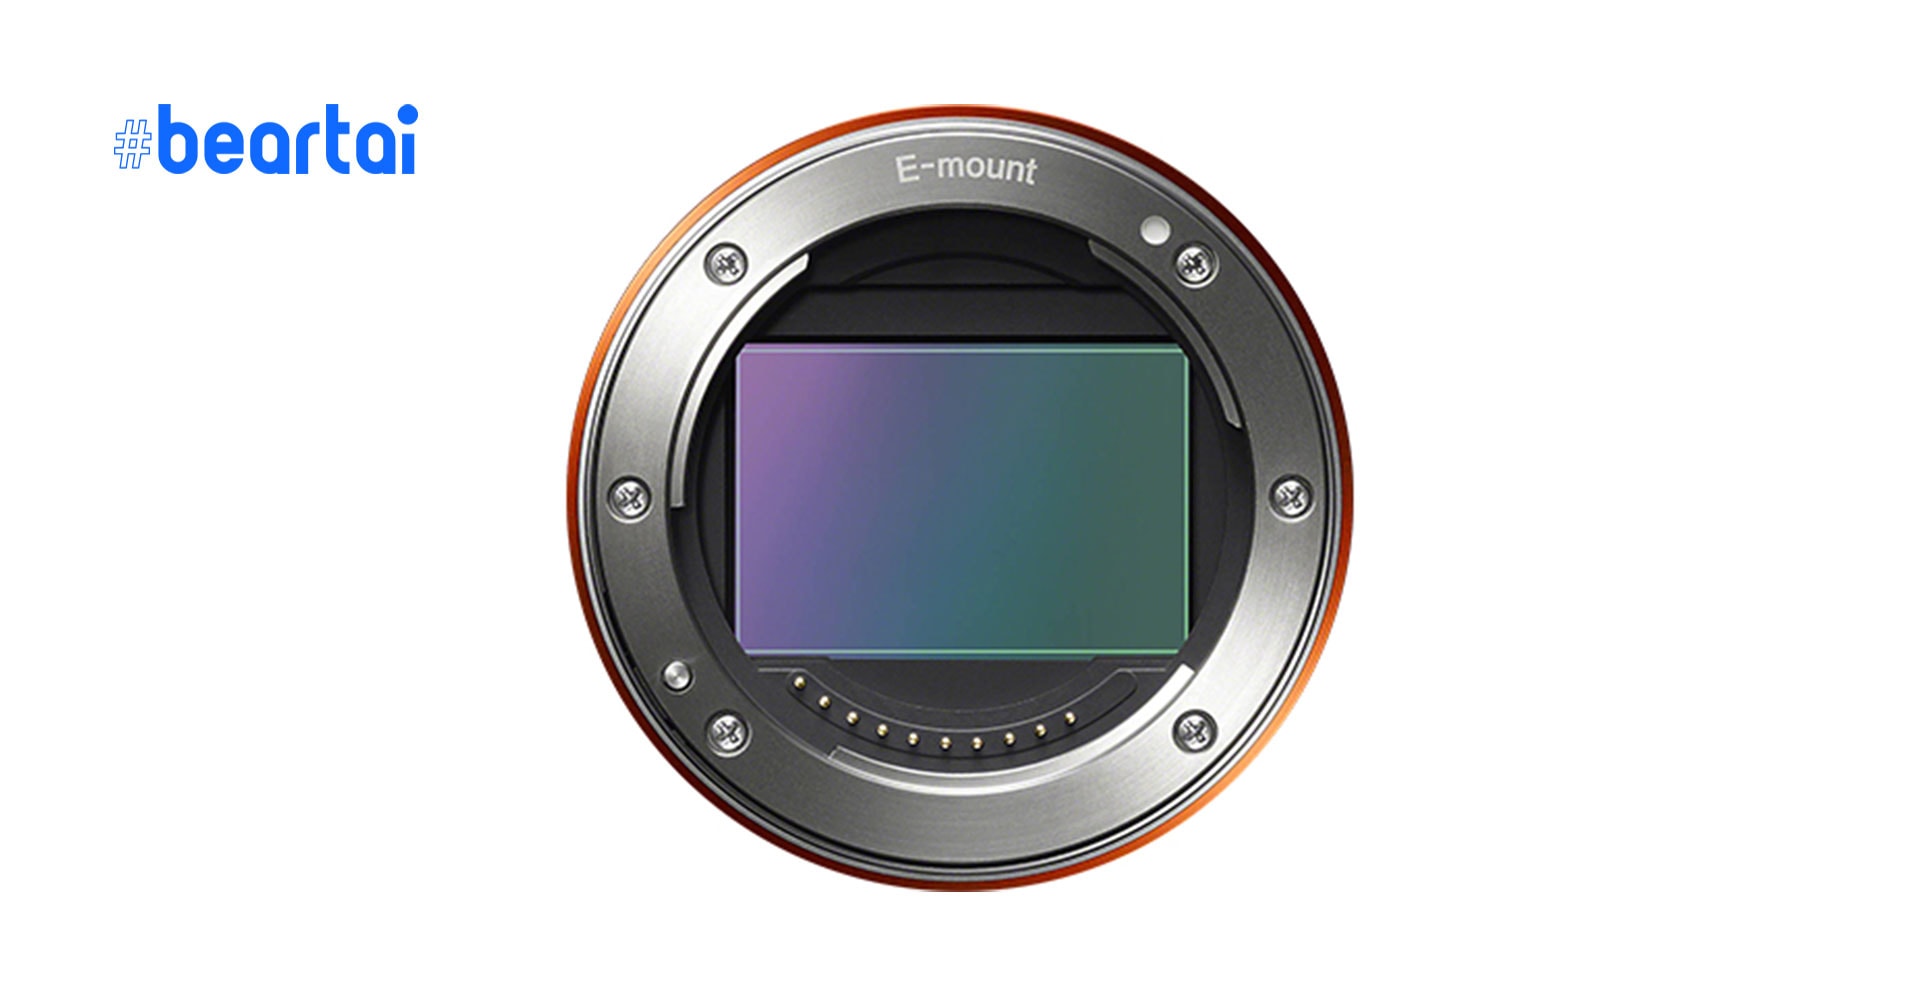 ยืนยัน! กล้องมิเรอร์เลส Full Frame E-mount ตัวใหม่จะมาในชื่อ “Sony A7c” ไม่ใช่ A5